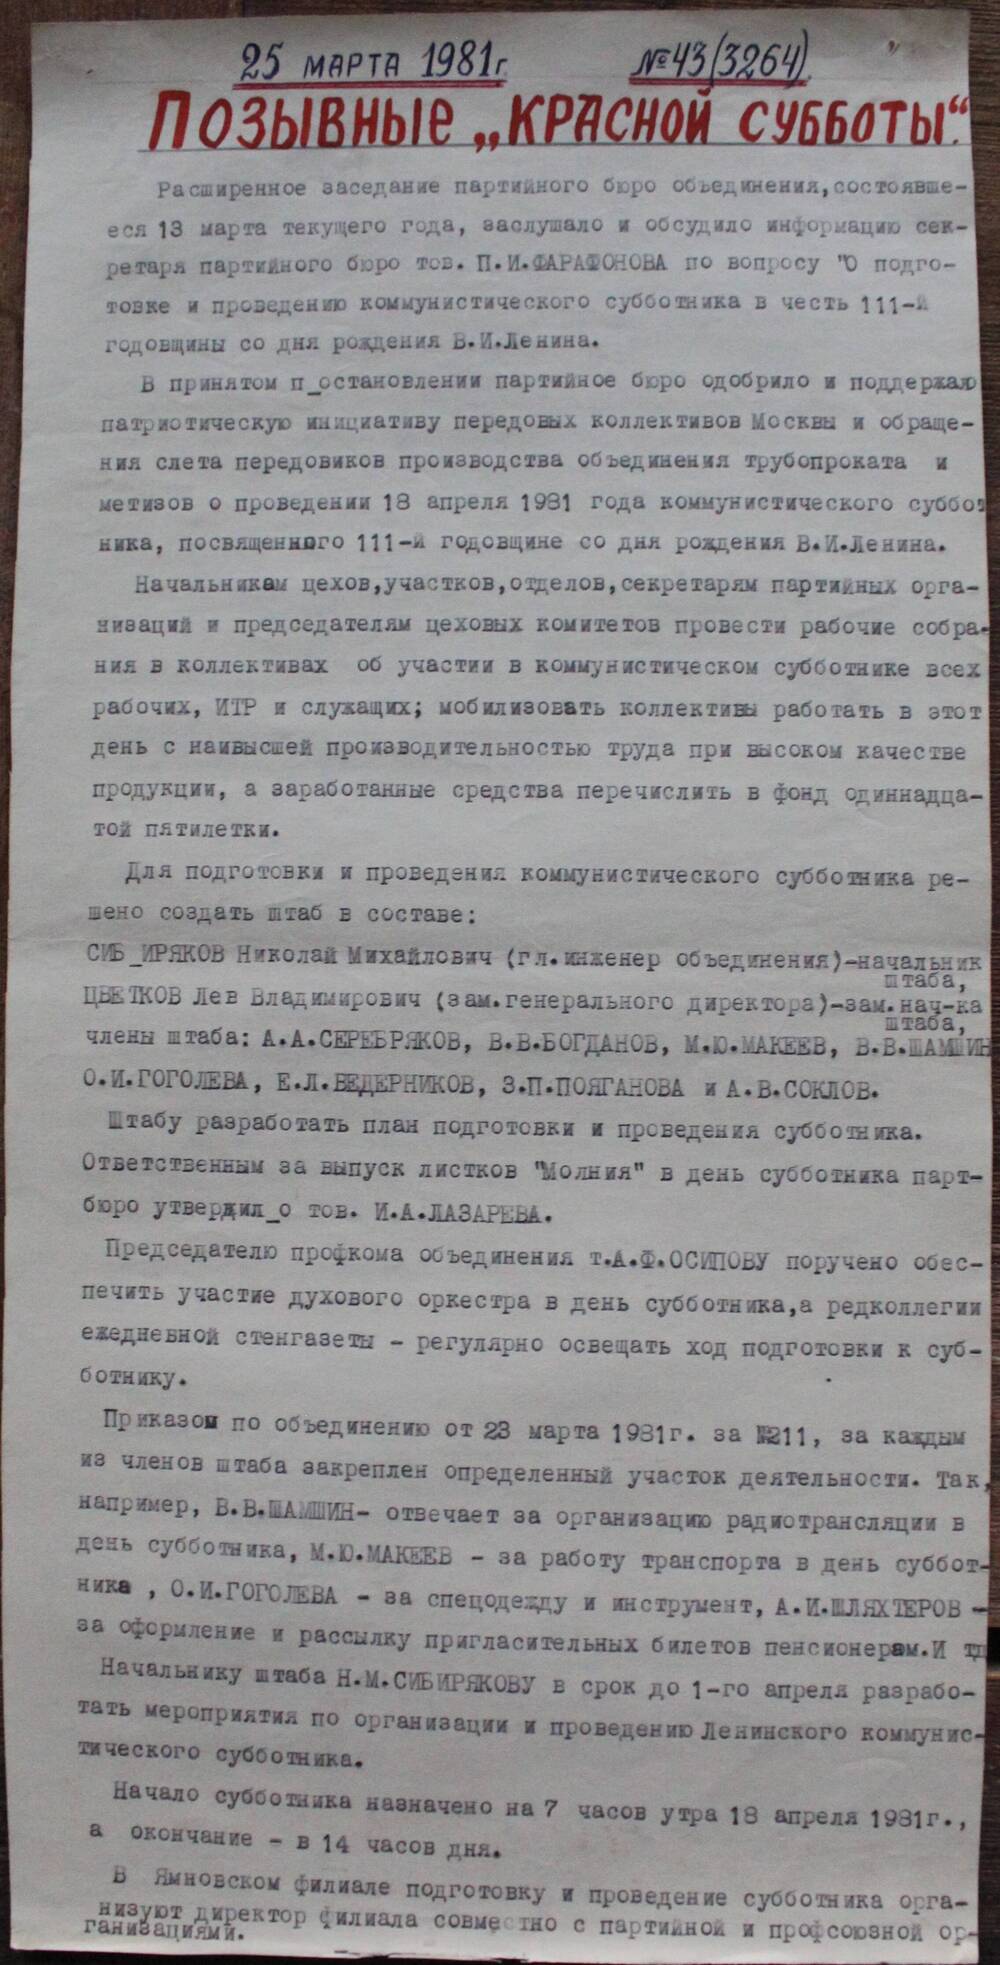 Стенгазета завода Прокатчик 1981 г.